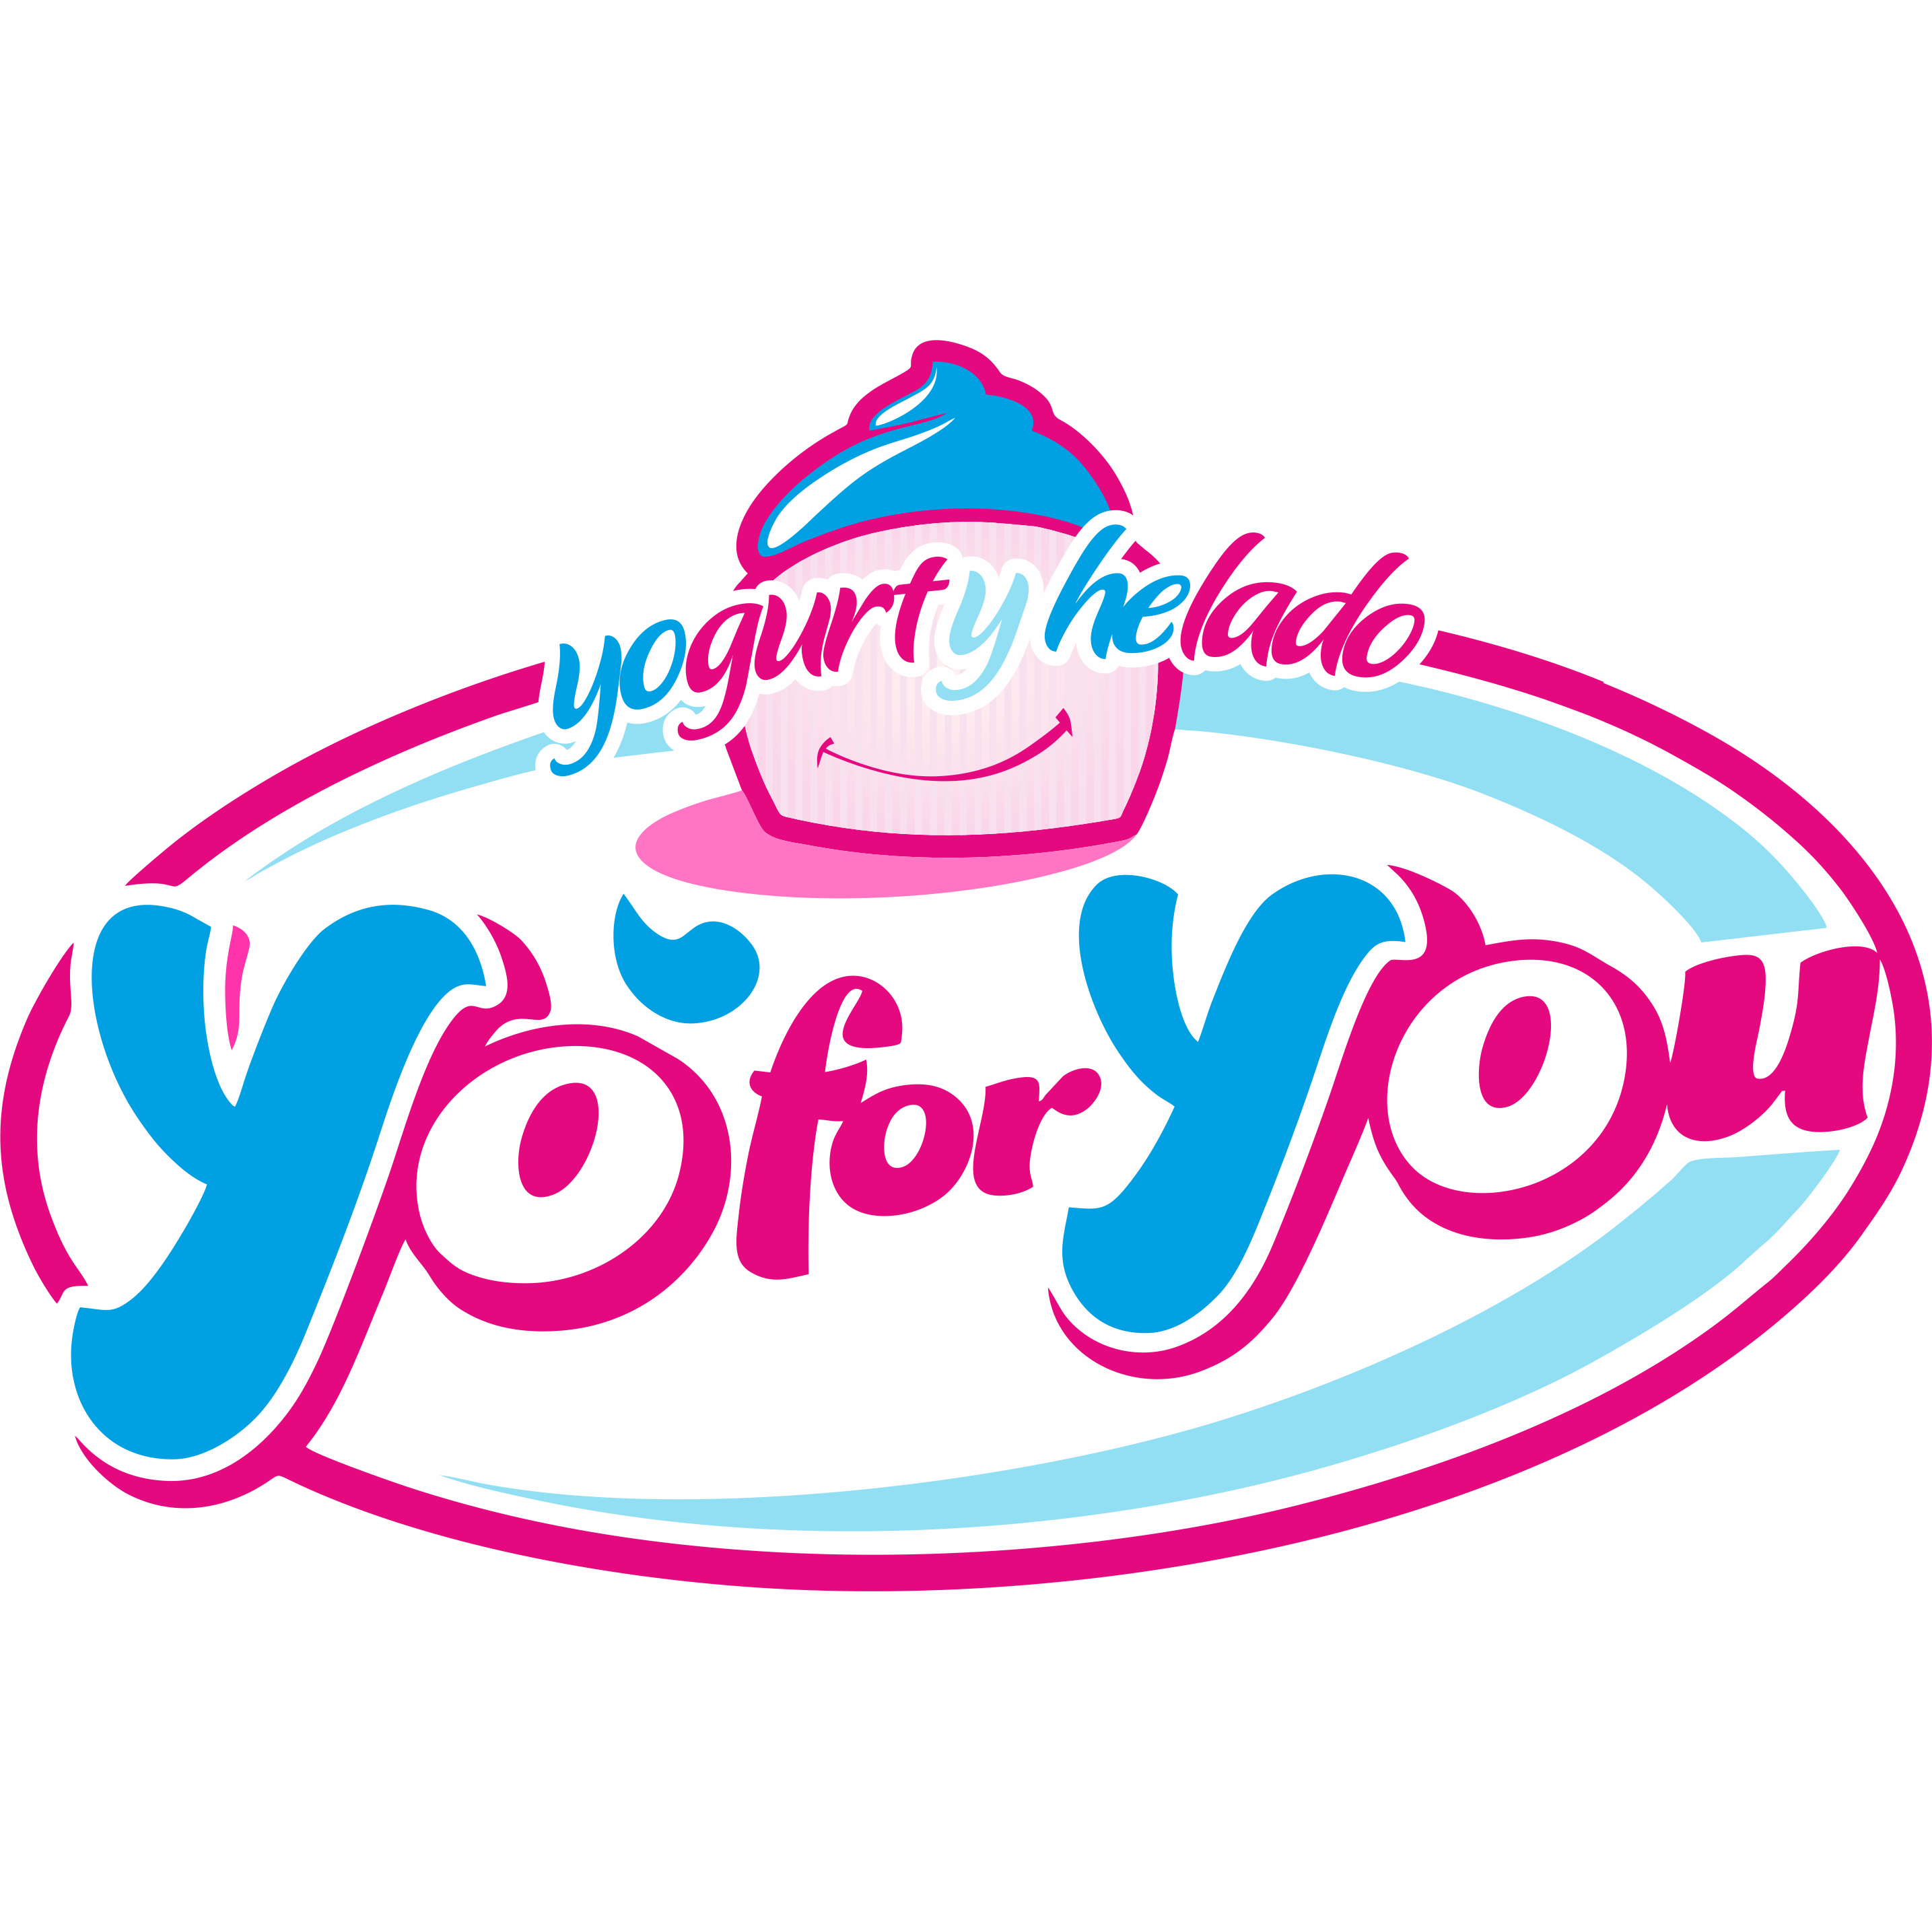 Heladería y Yogurtería Artesanal YOFORYOU Logo